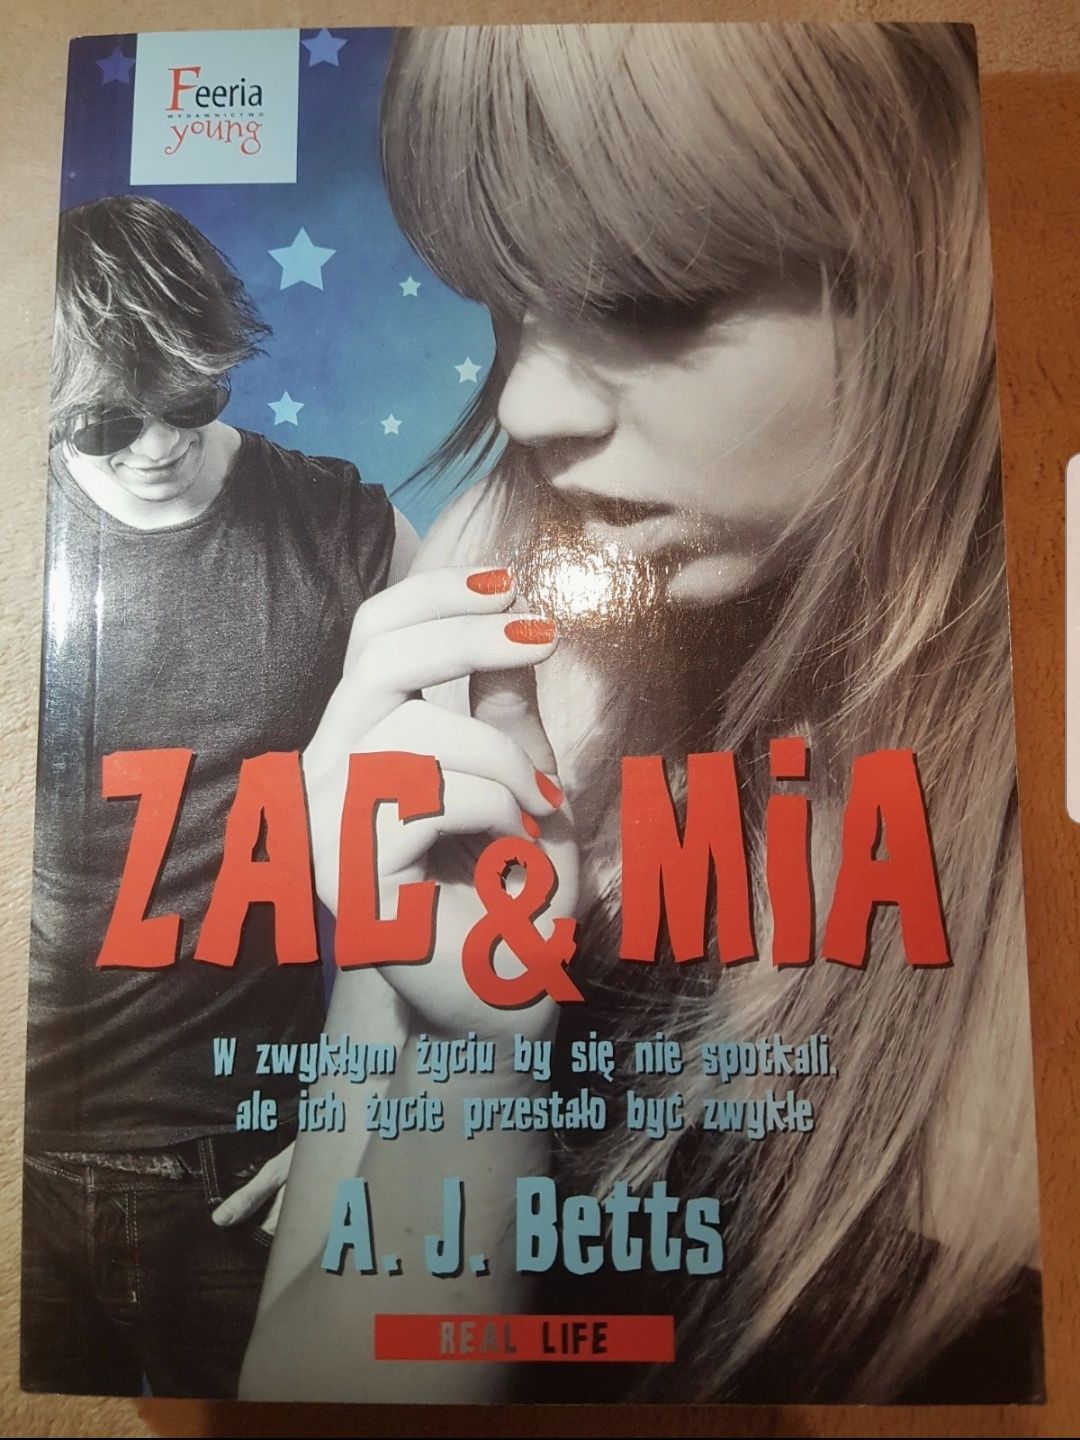 "Zac & Mia" A. J. Betts